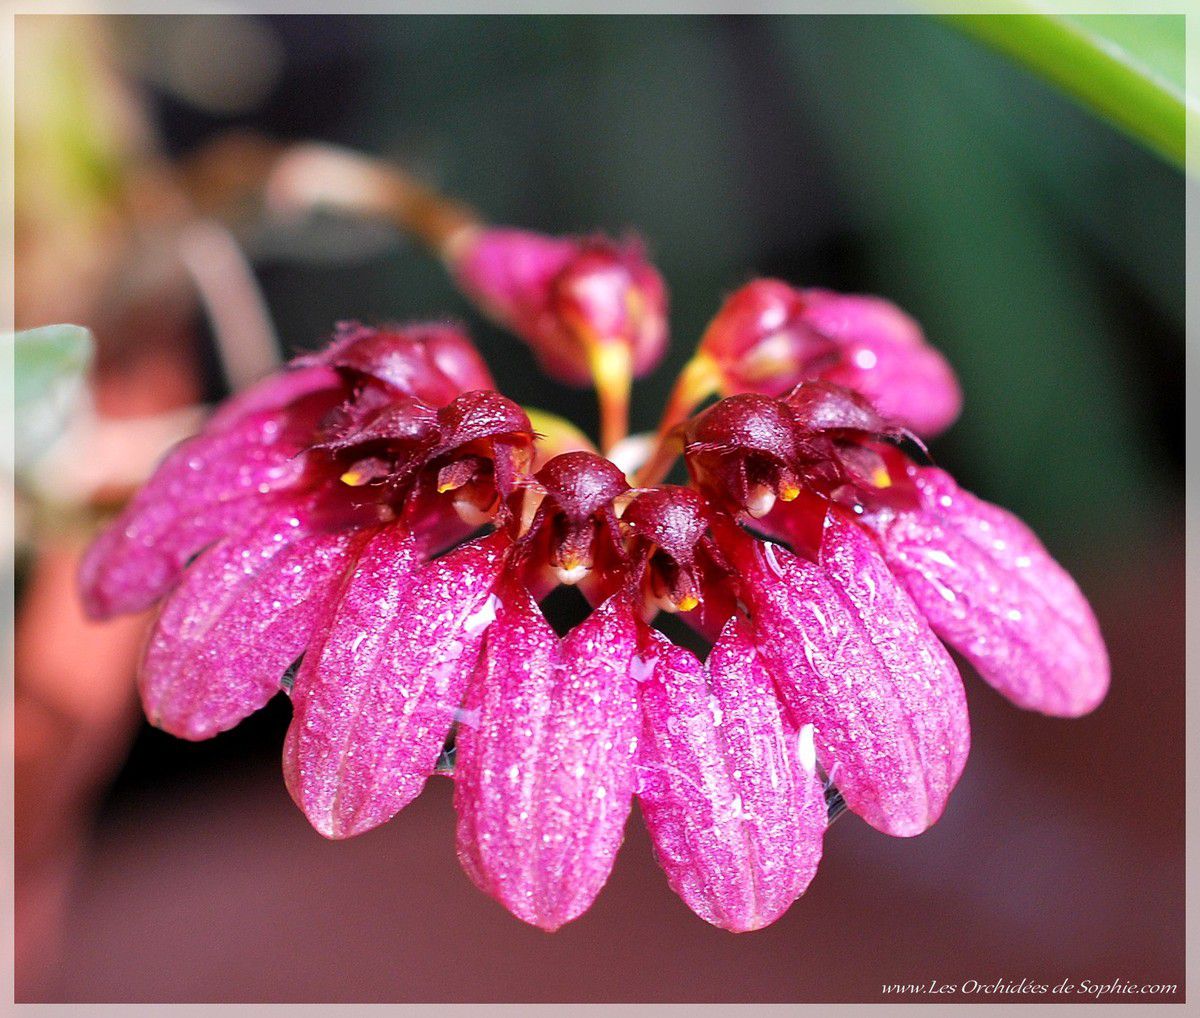 Bulbophyllum conccineum purpureum